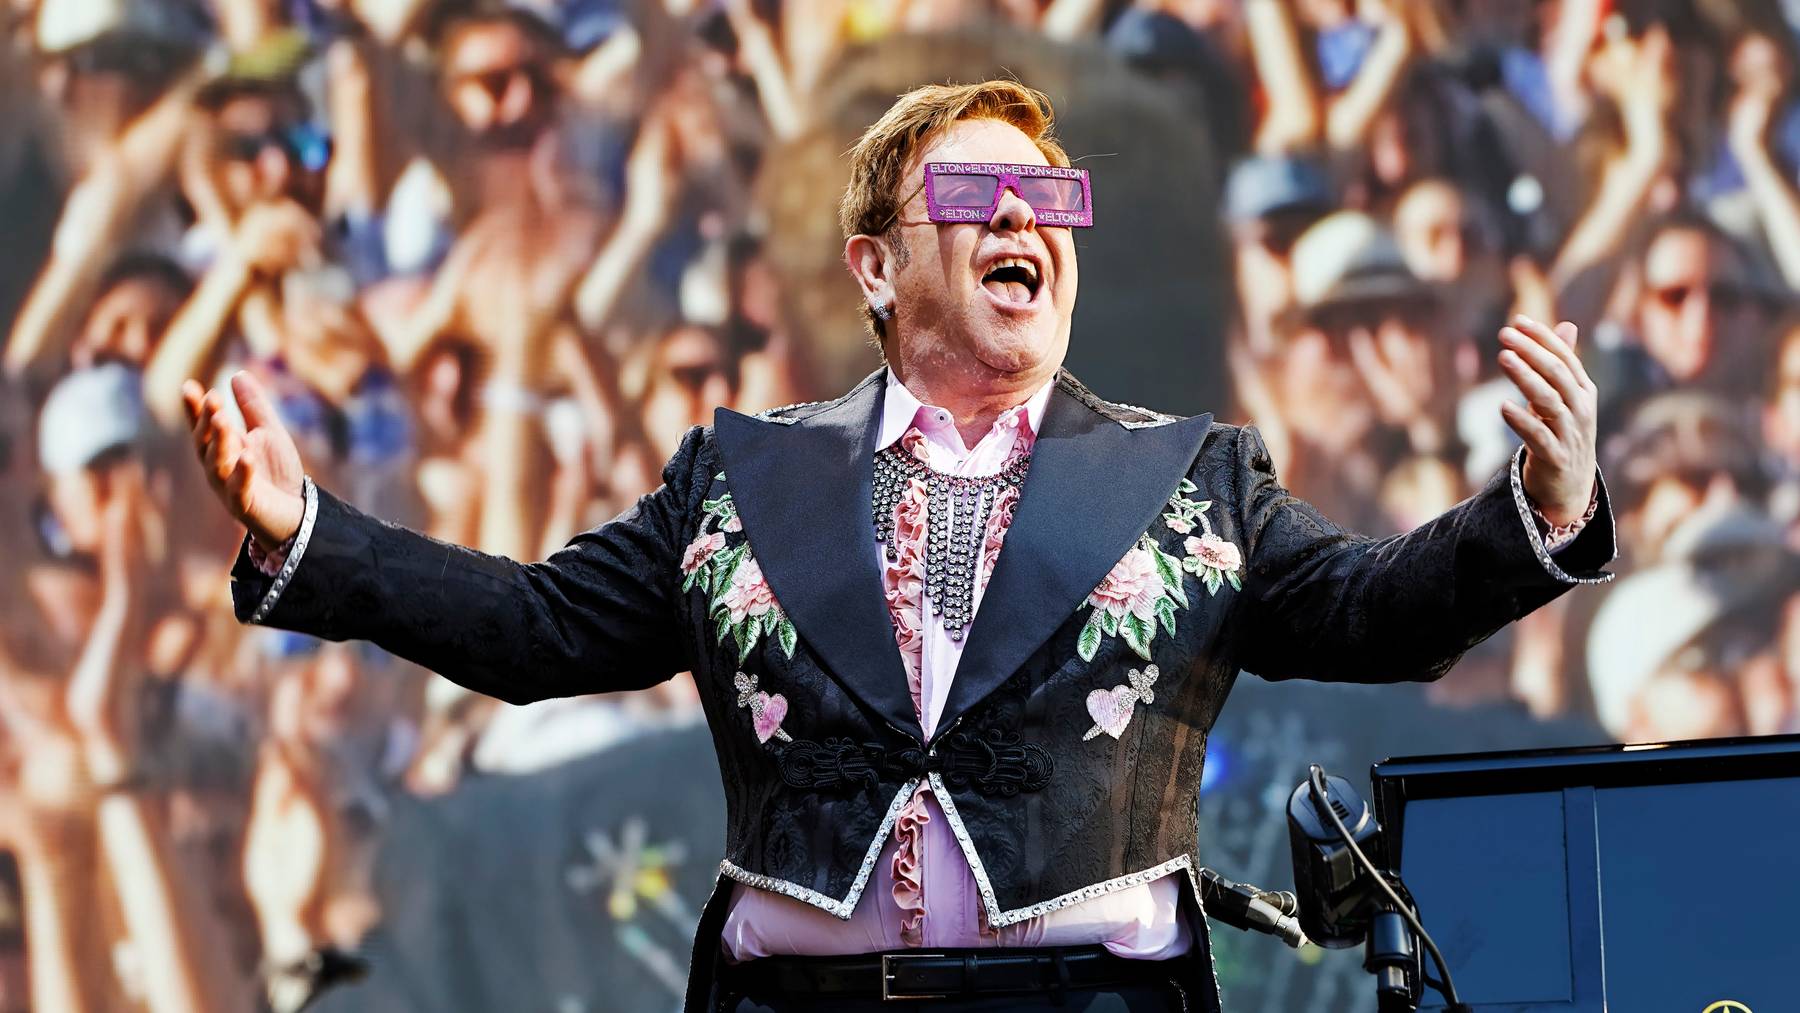 Findet dieses Jahr nicht statt: Das Montreux Jazz Festival – letztes Jahr unter anderem besucht von Elton John auf seiner Abschiedstour.